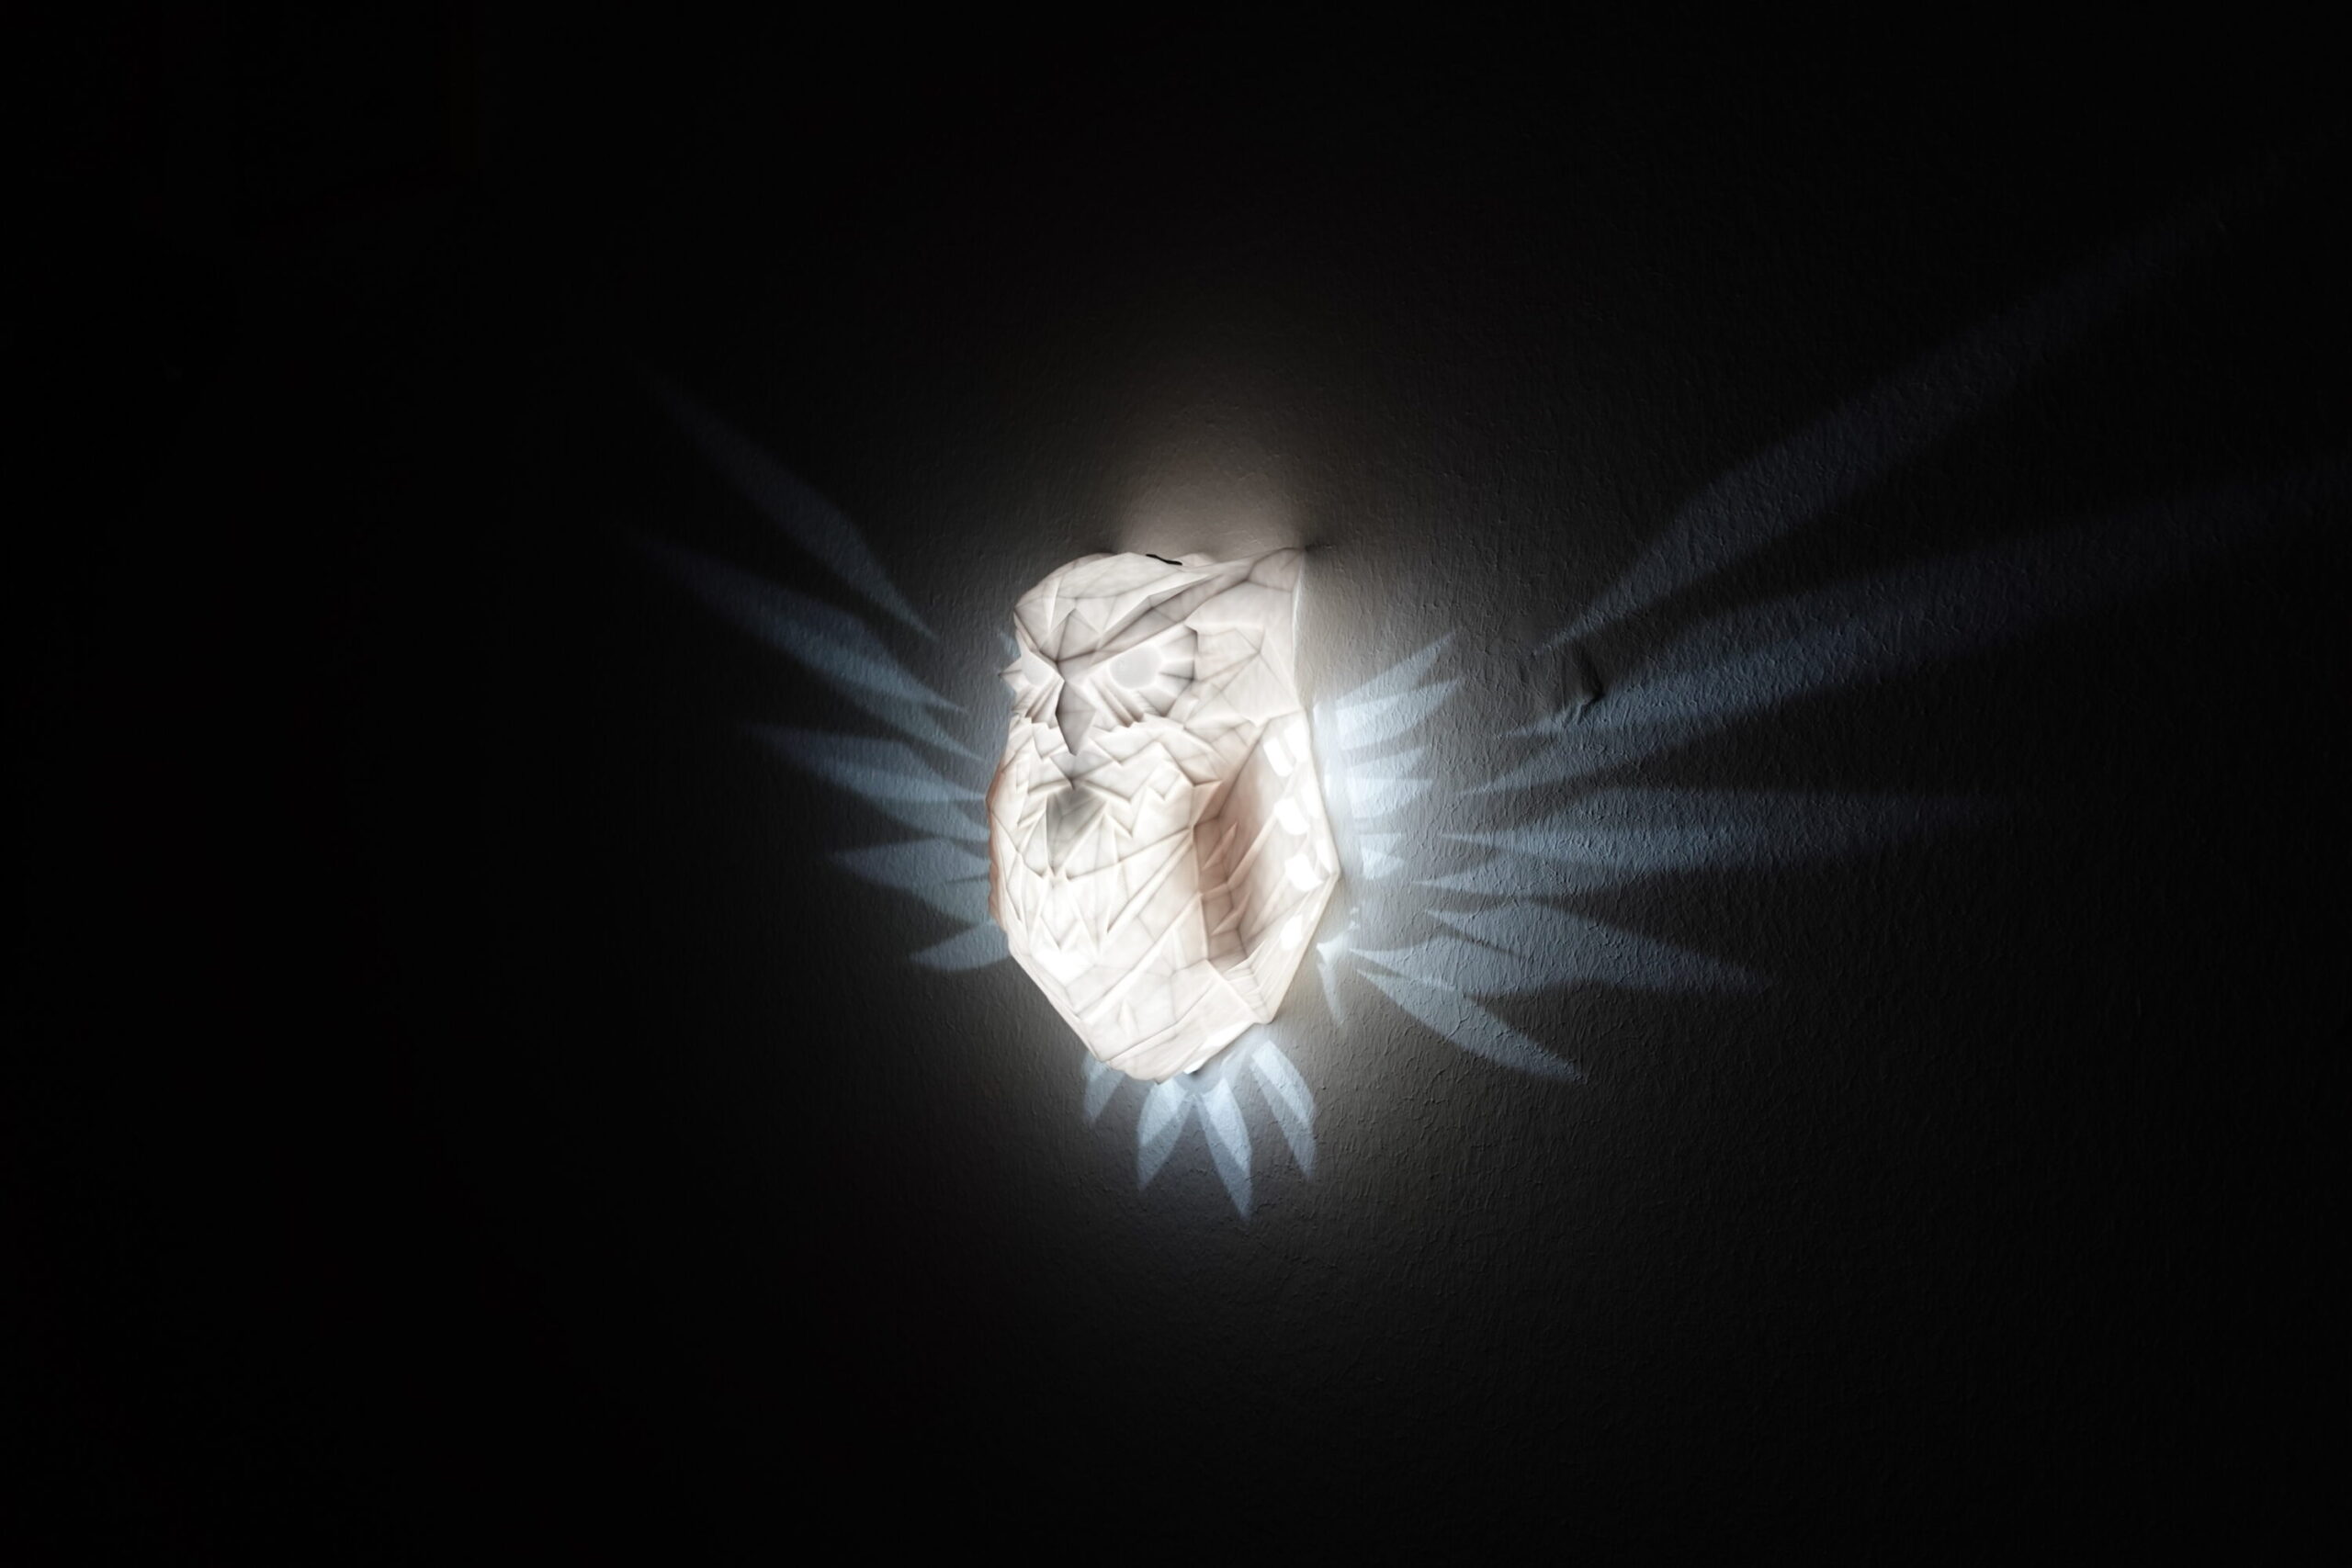 Pegasus LED Wandlampe - Flügel erstrahlen an der Wand - Pferdelampe  Nachtlicht Wandlicht